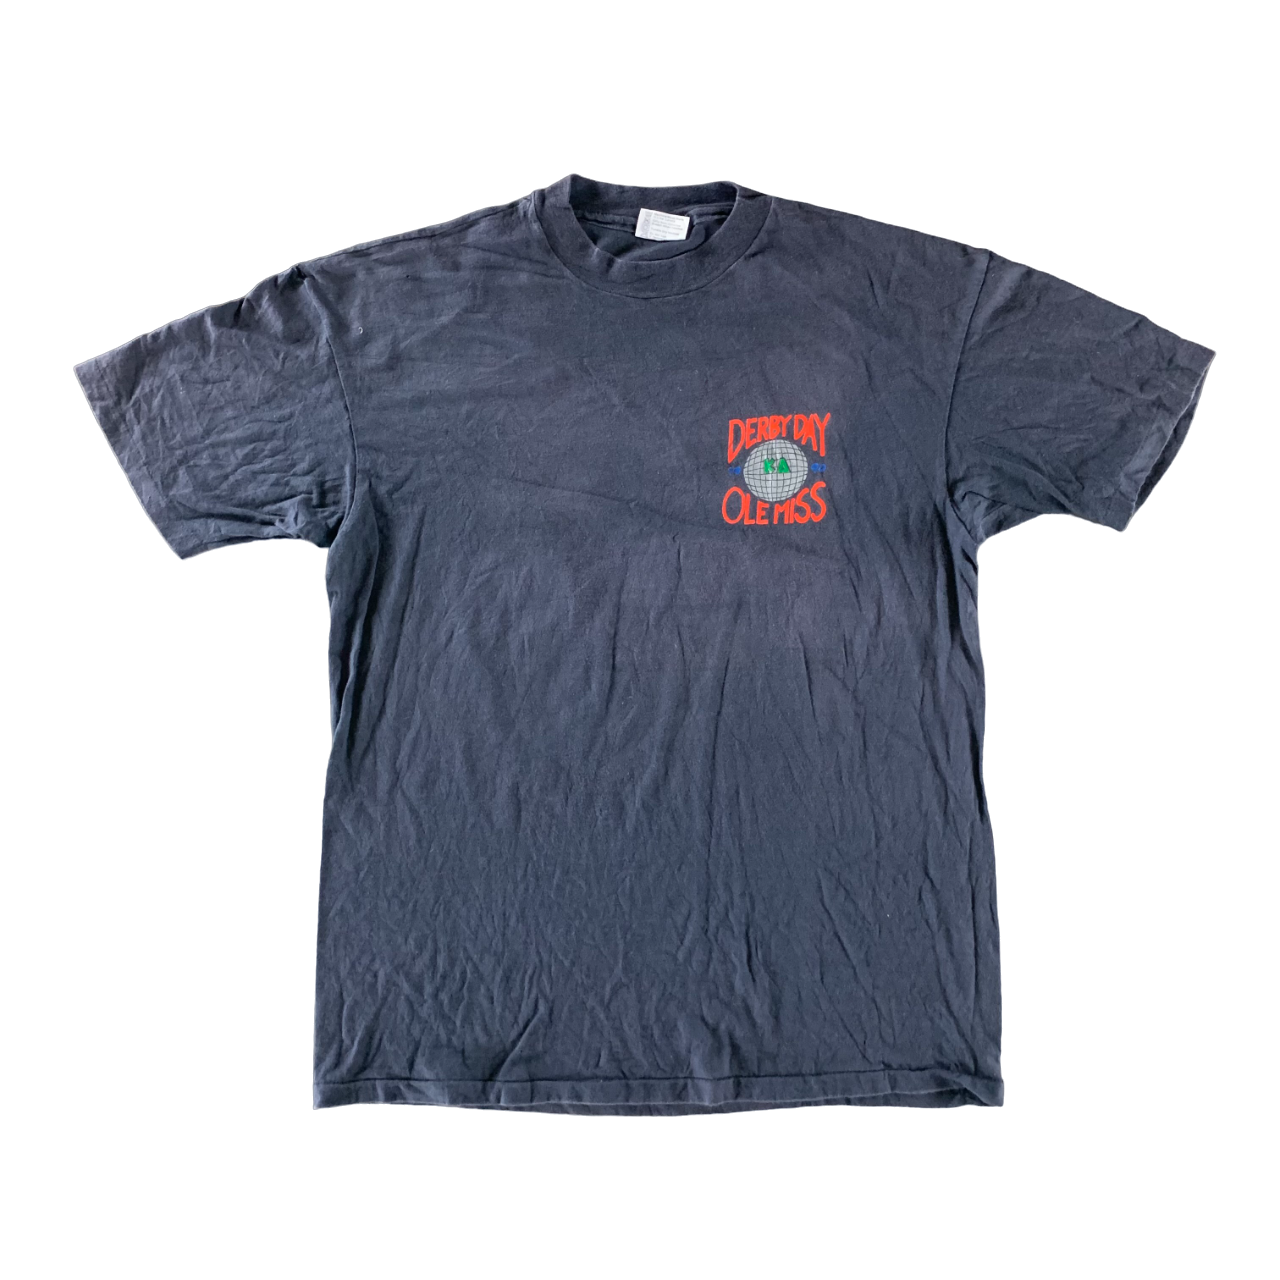 Vintage 1990s Ole Miss T-shirt size XL